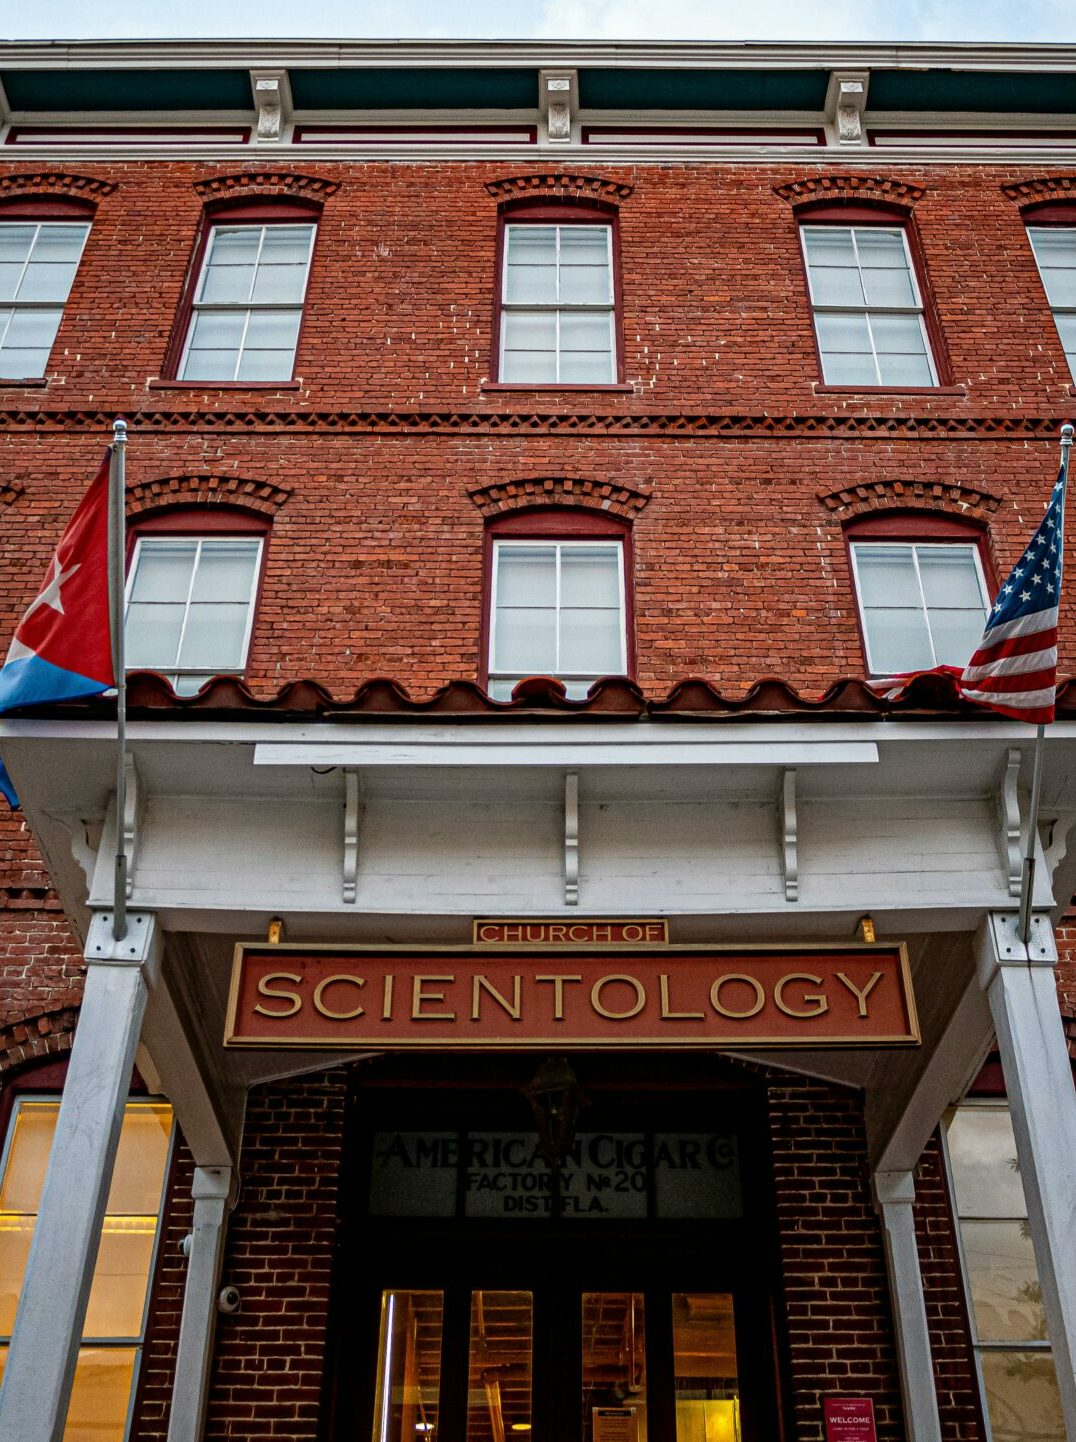 Proche de la Scientologie, l'association voulait s'emparer de données d'hôpitaux psychiatriques